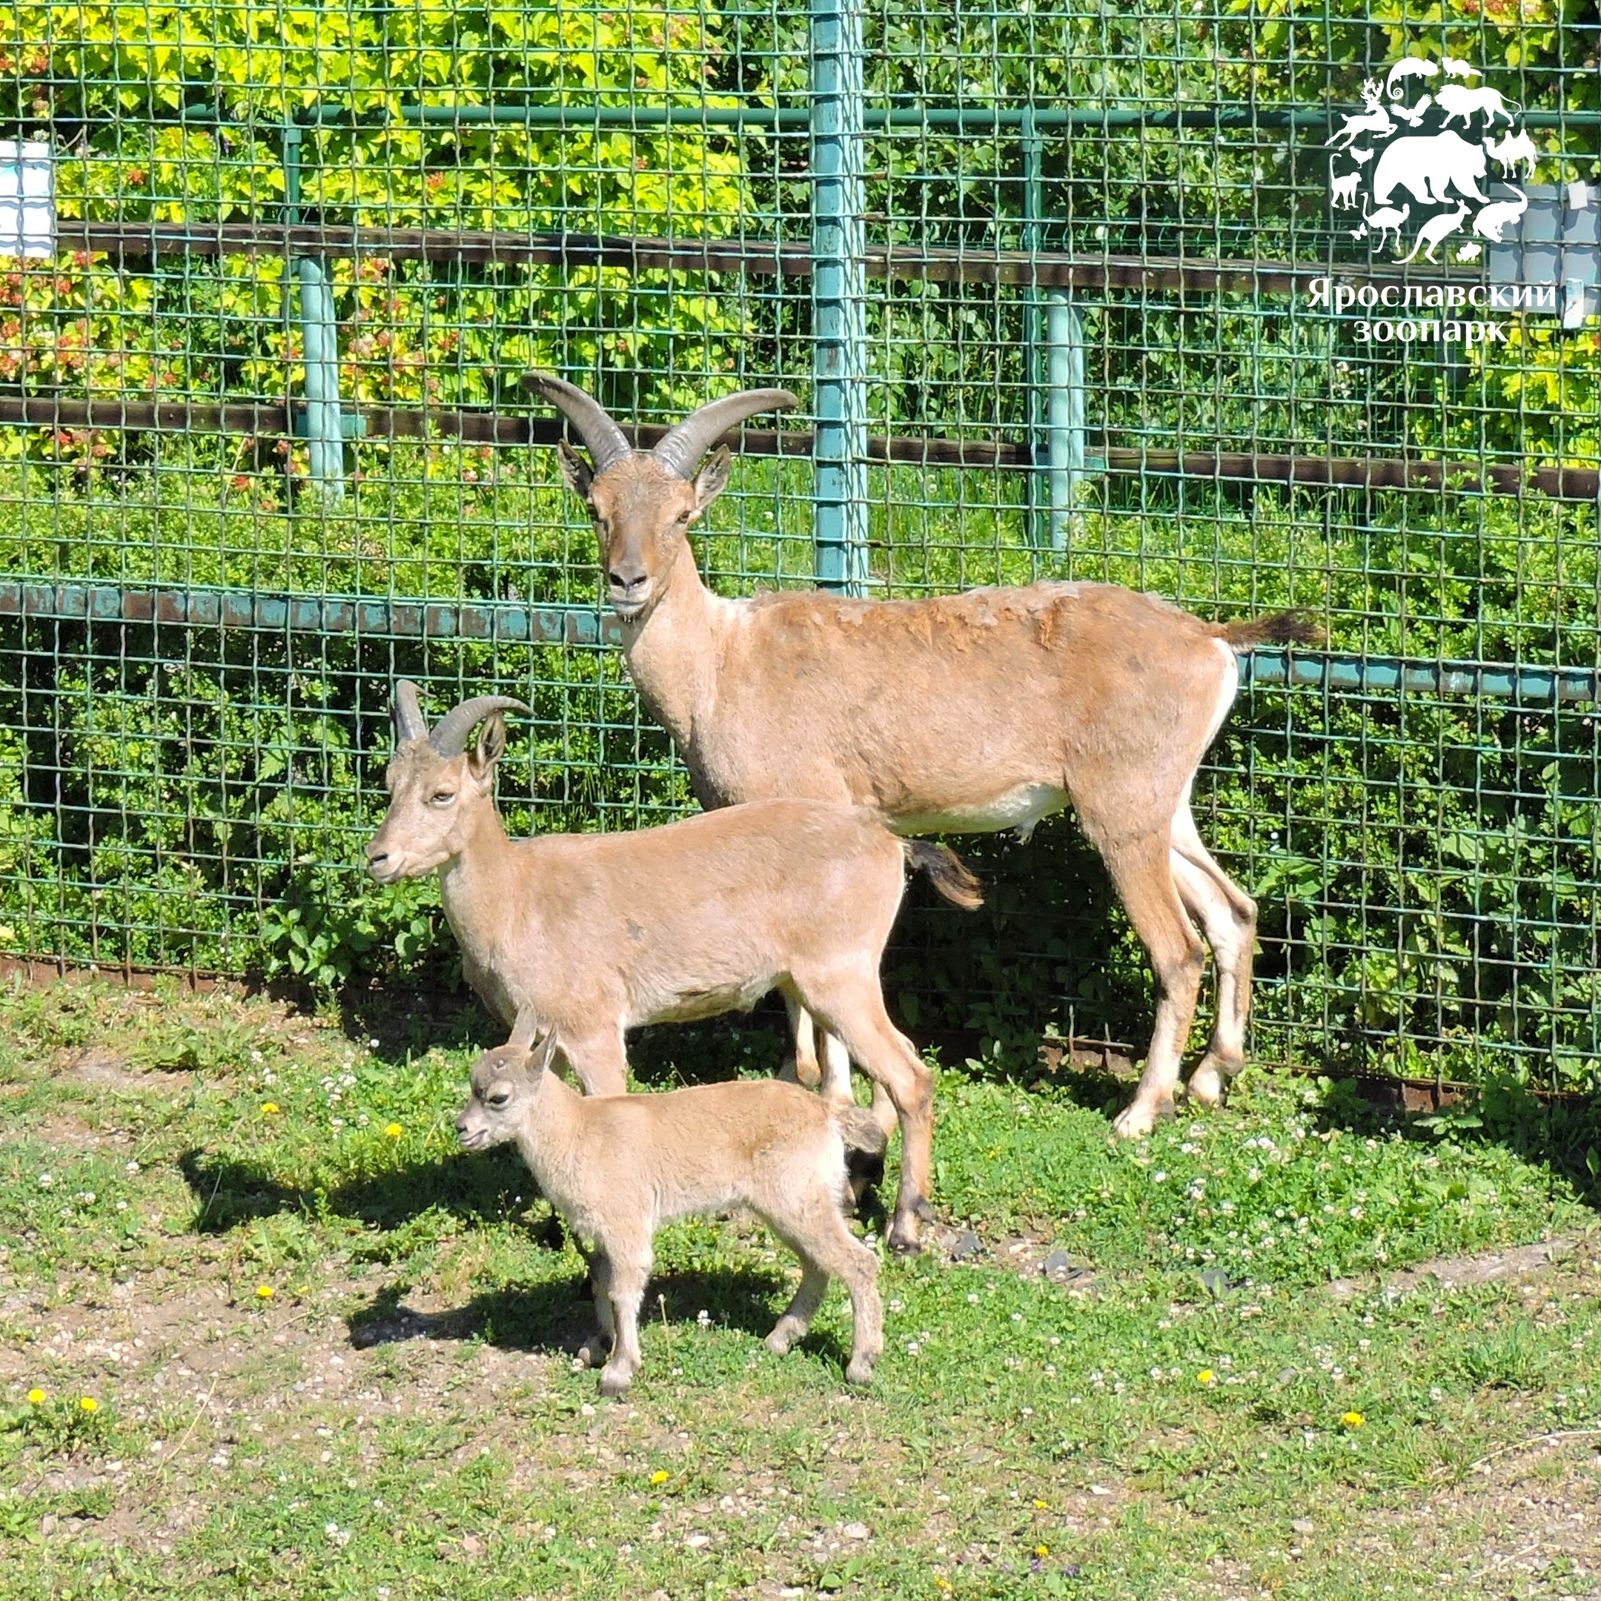 Бэби-бум в Ярославском зоопарке: на свет появились дагестанский тур, винторогие козлики, лань и ослик